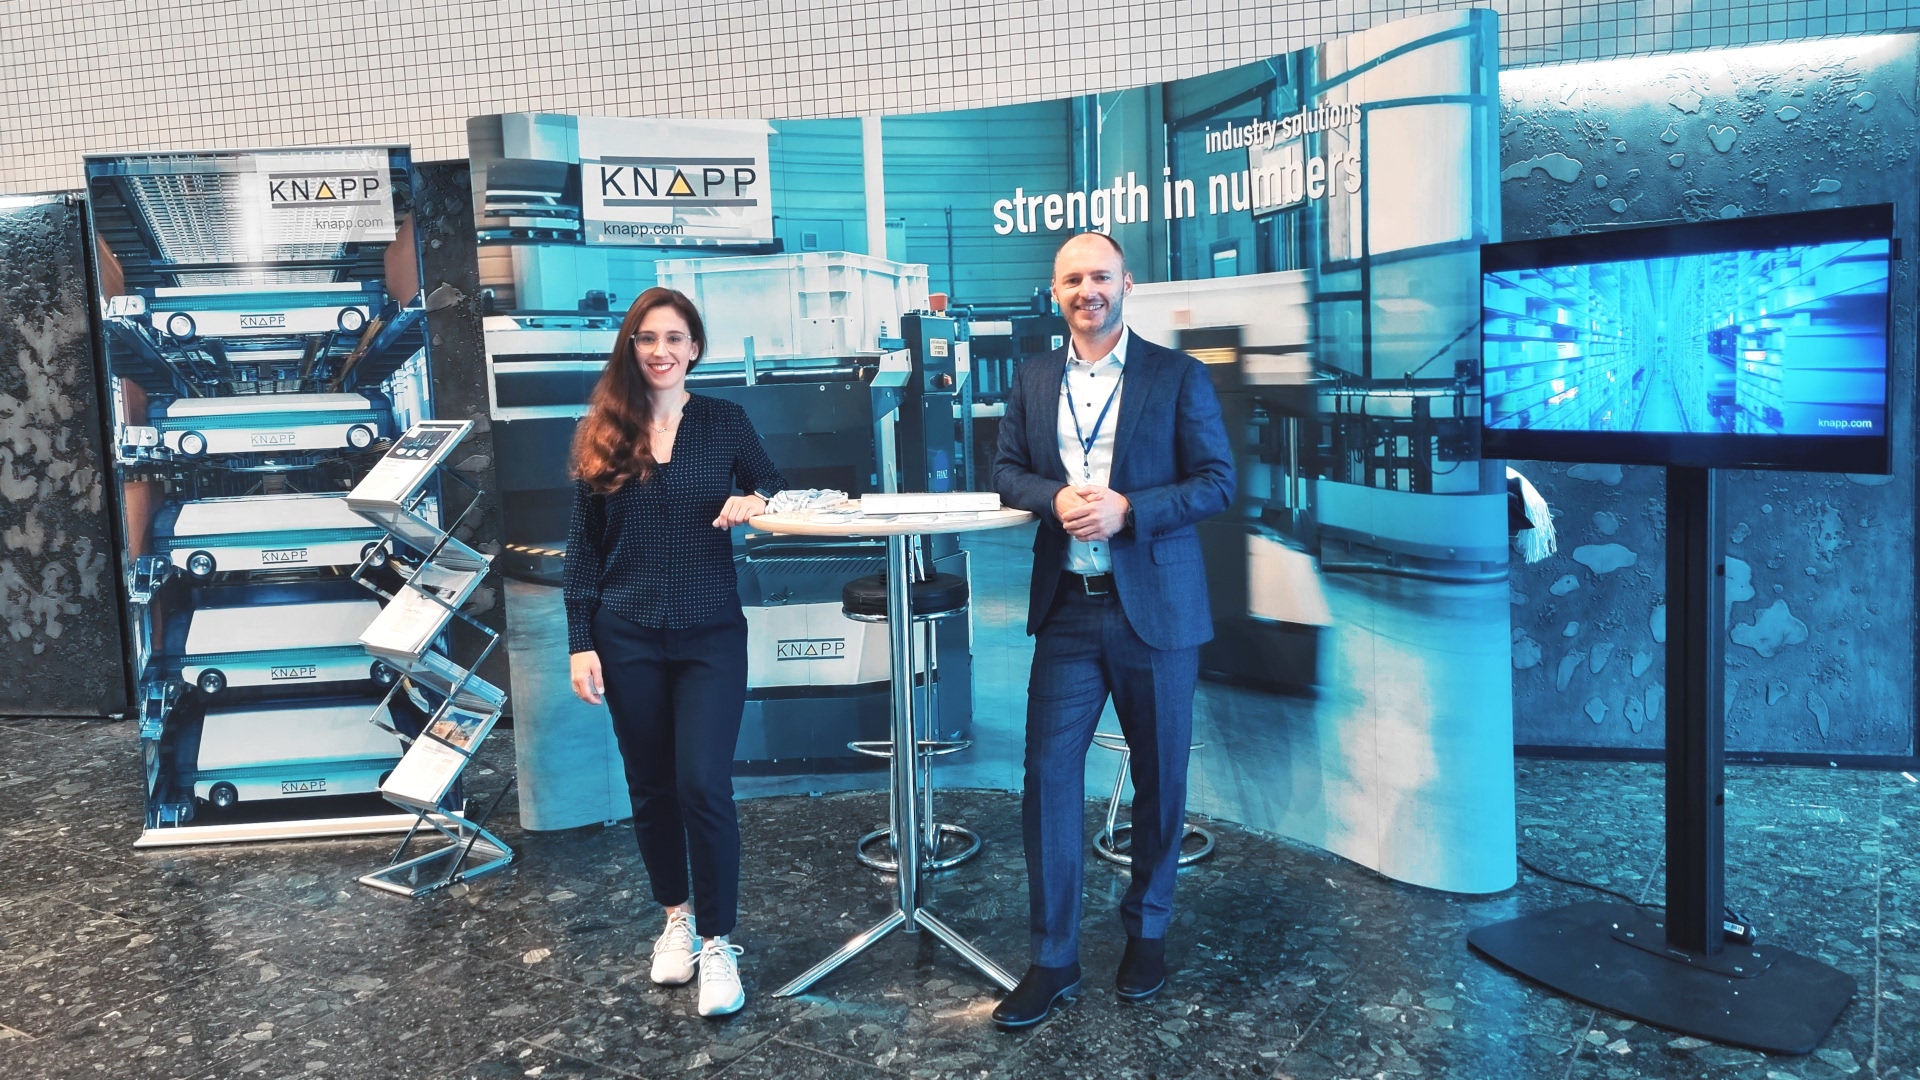 KNAPP Deutschland GmbH sales team at a congress.